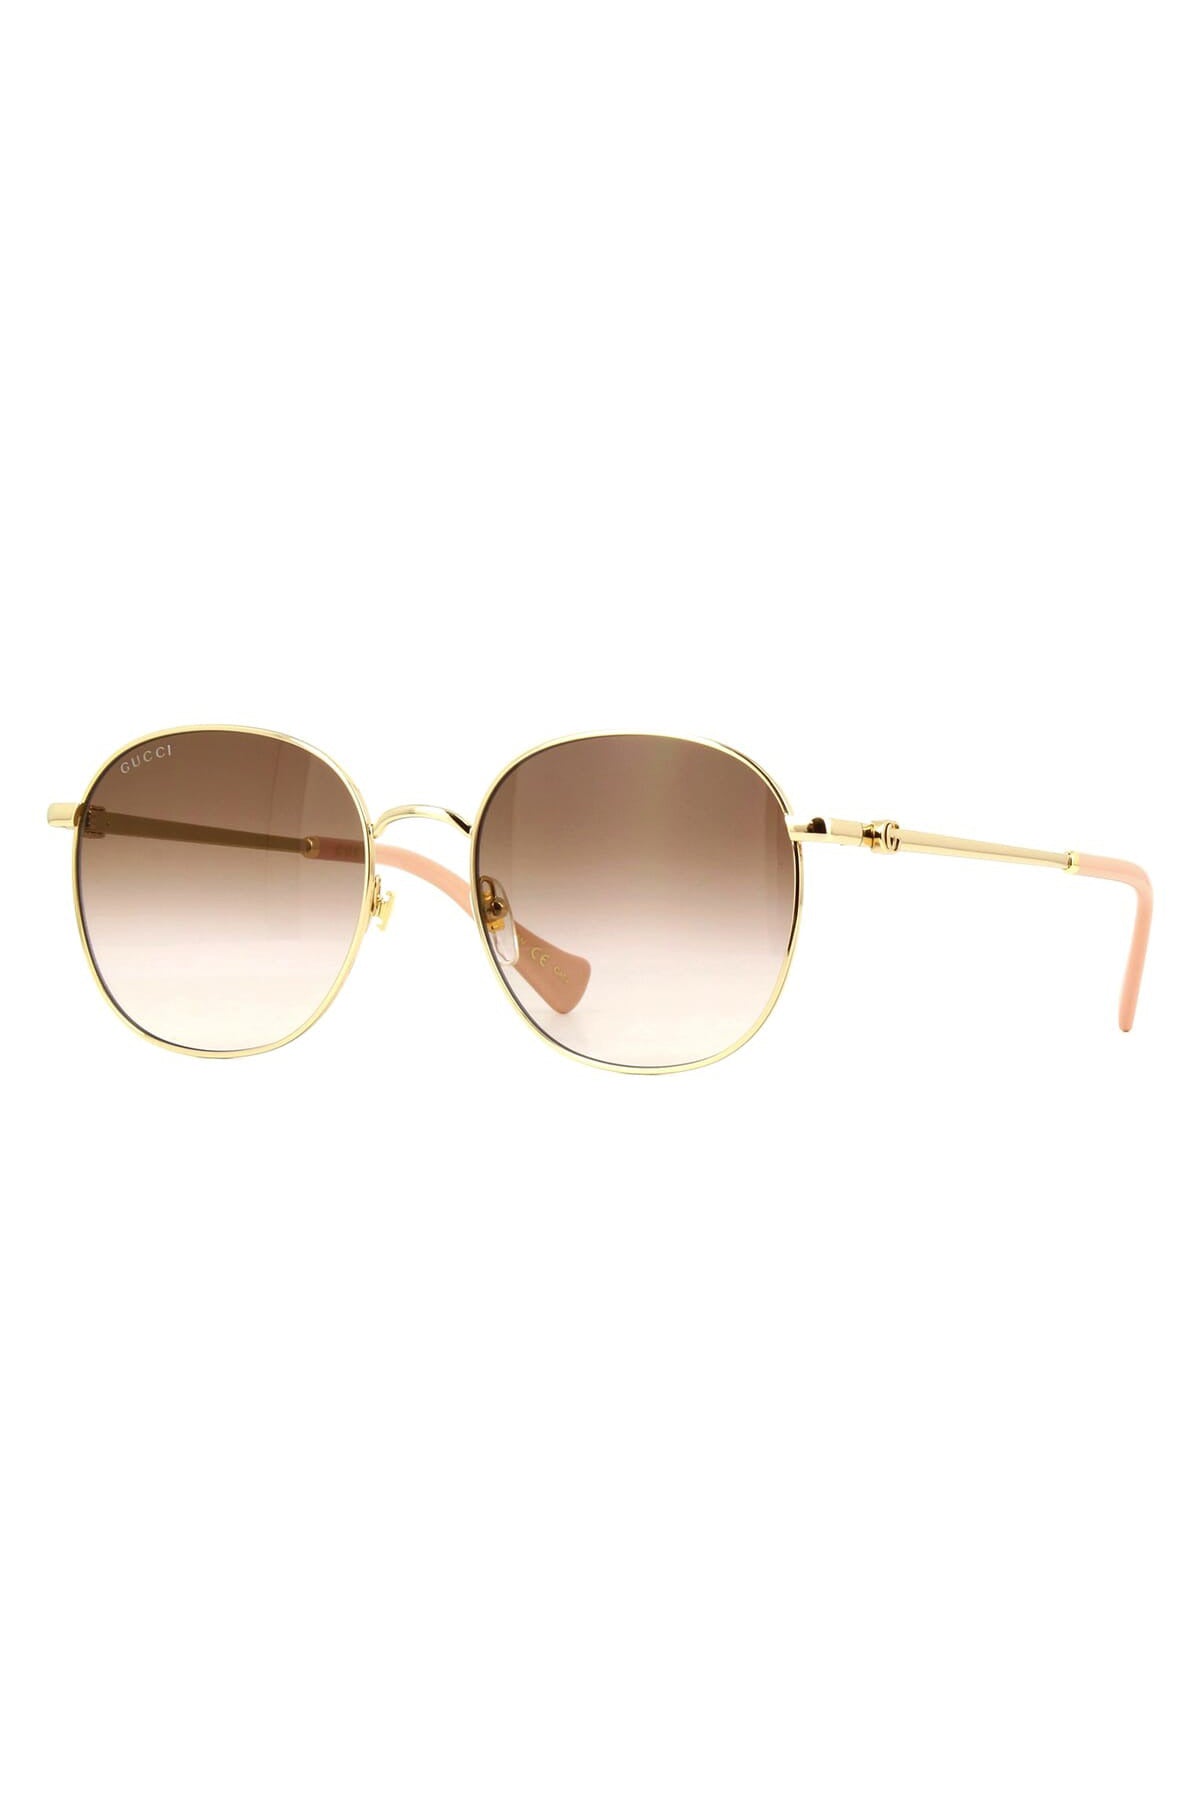 GUCCI-Gradiant Round Sunglasses-GOLD